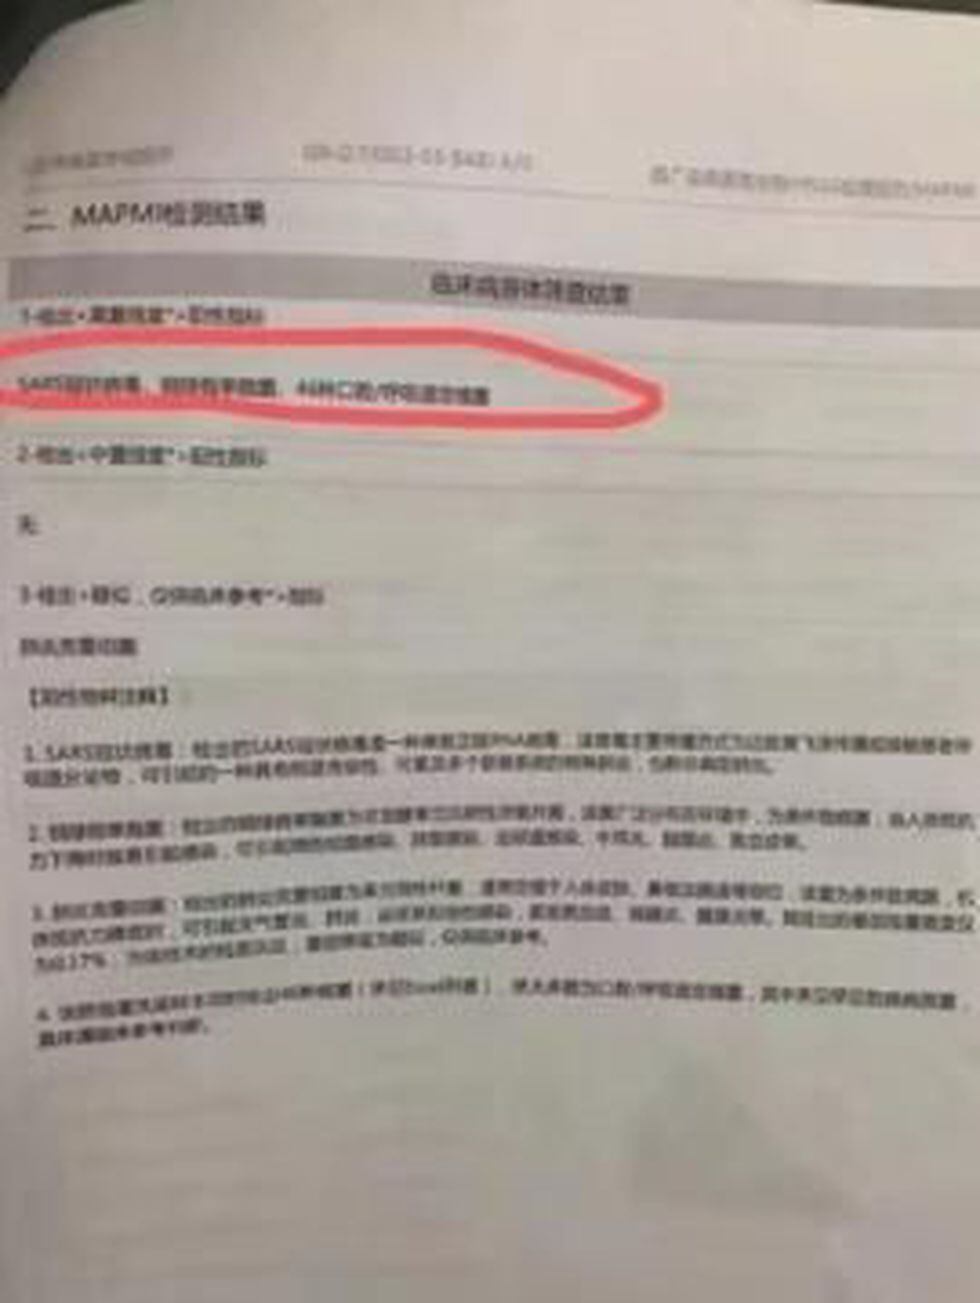 Ya en diciembre, Li publicó en la red social Weibo un documento médico en el que detallaba el diagnóstico de coronavirus para un paciente.
